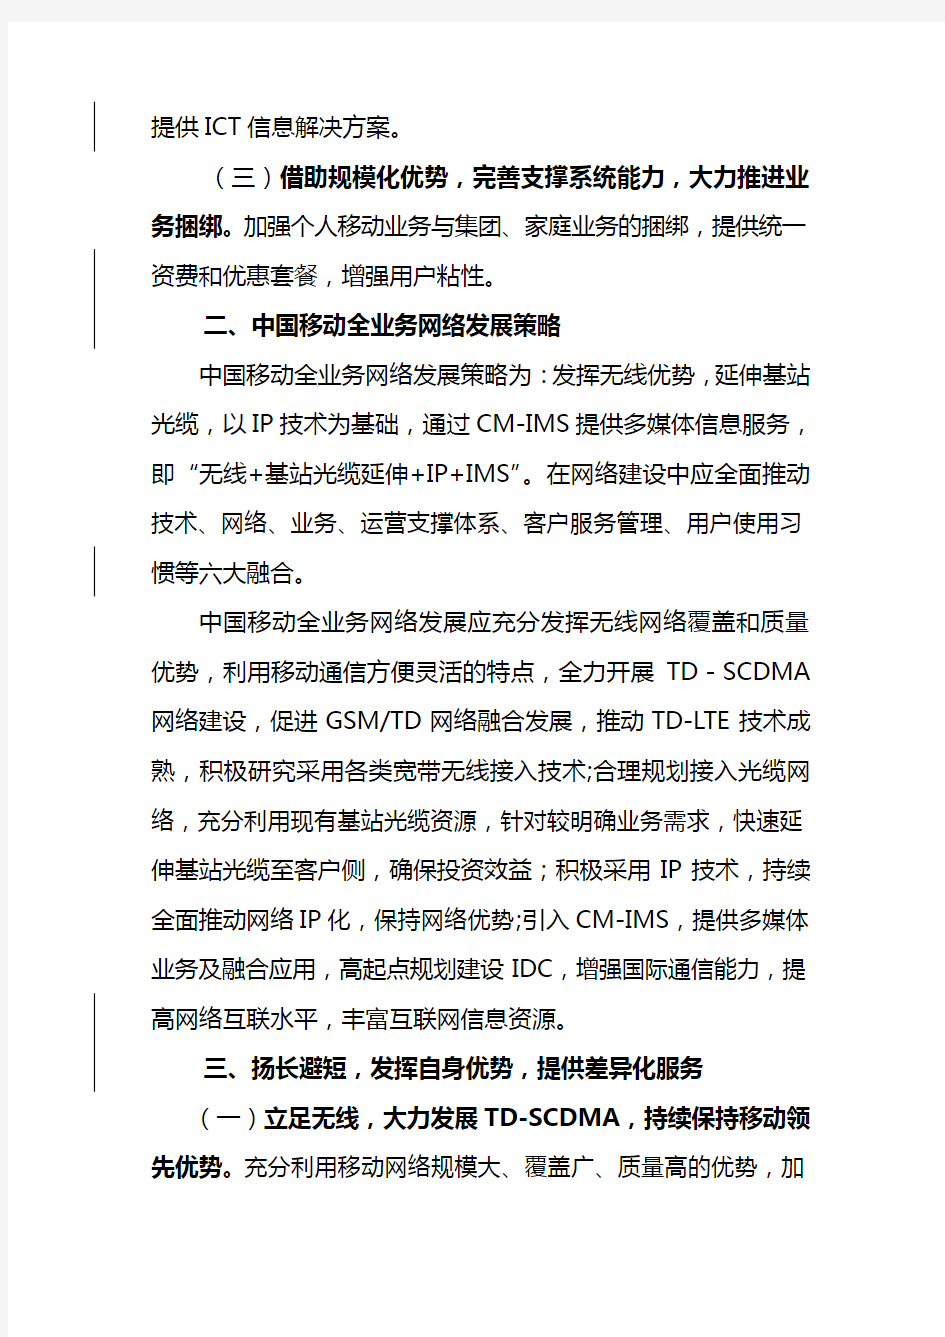 中国移动集团公司全业务发展指导意见